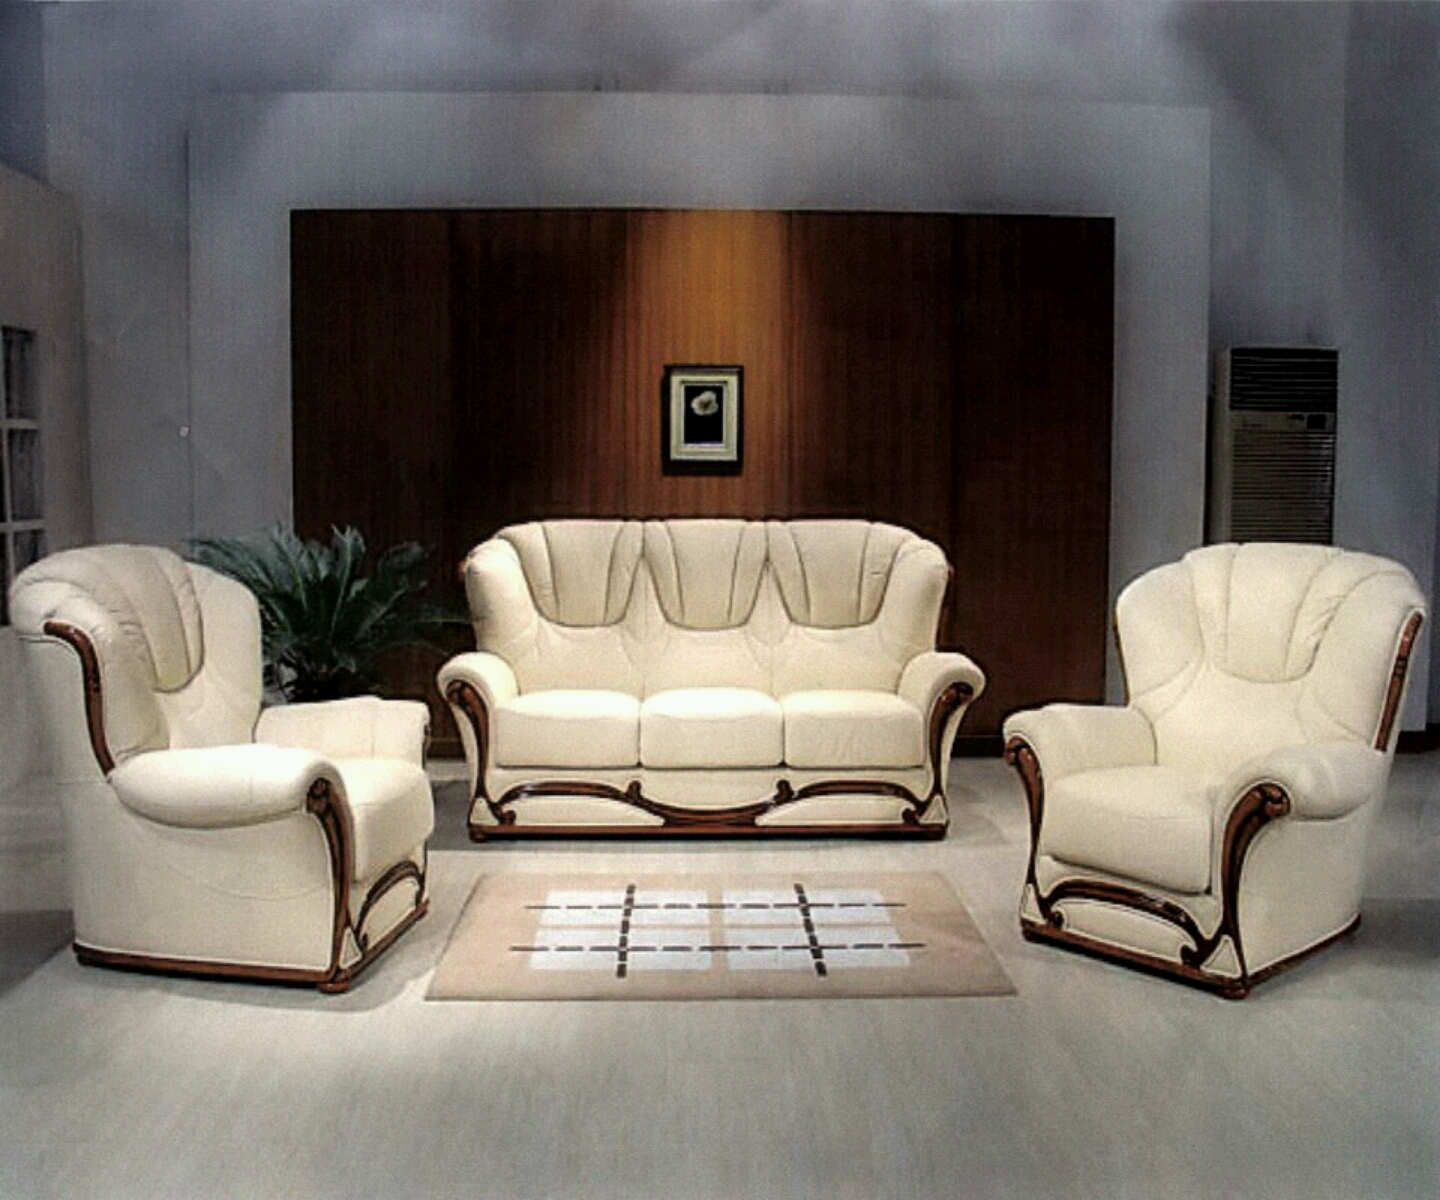 H for Heroine: Modern sofa set designs.